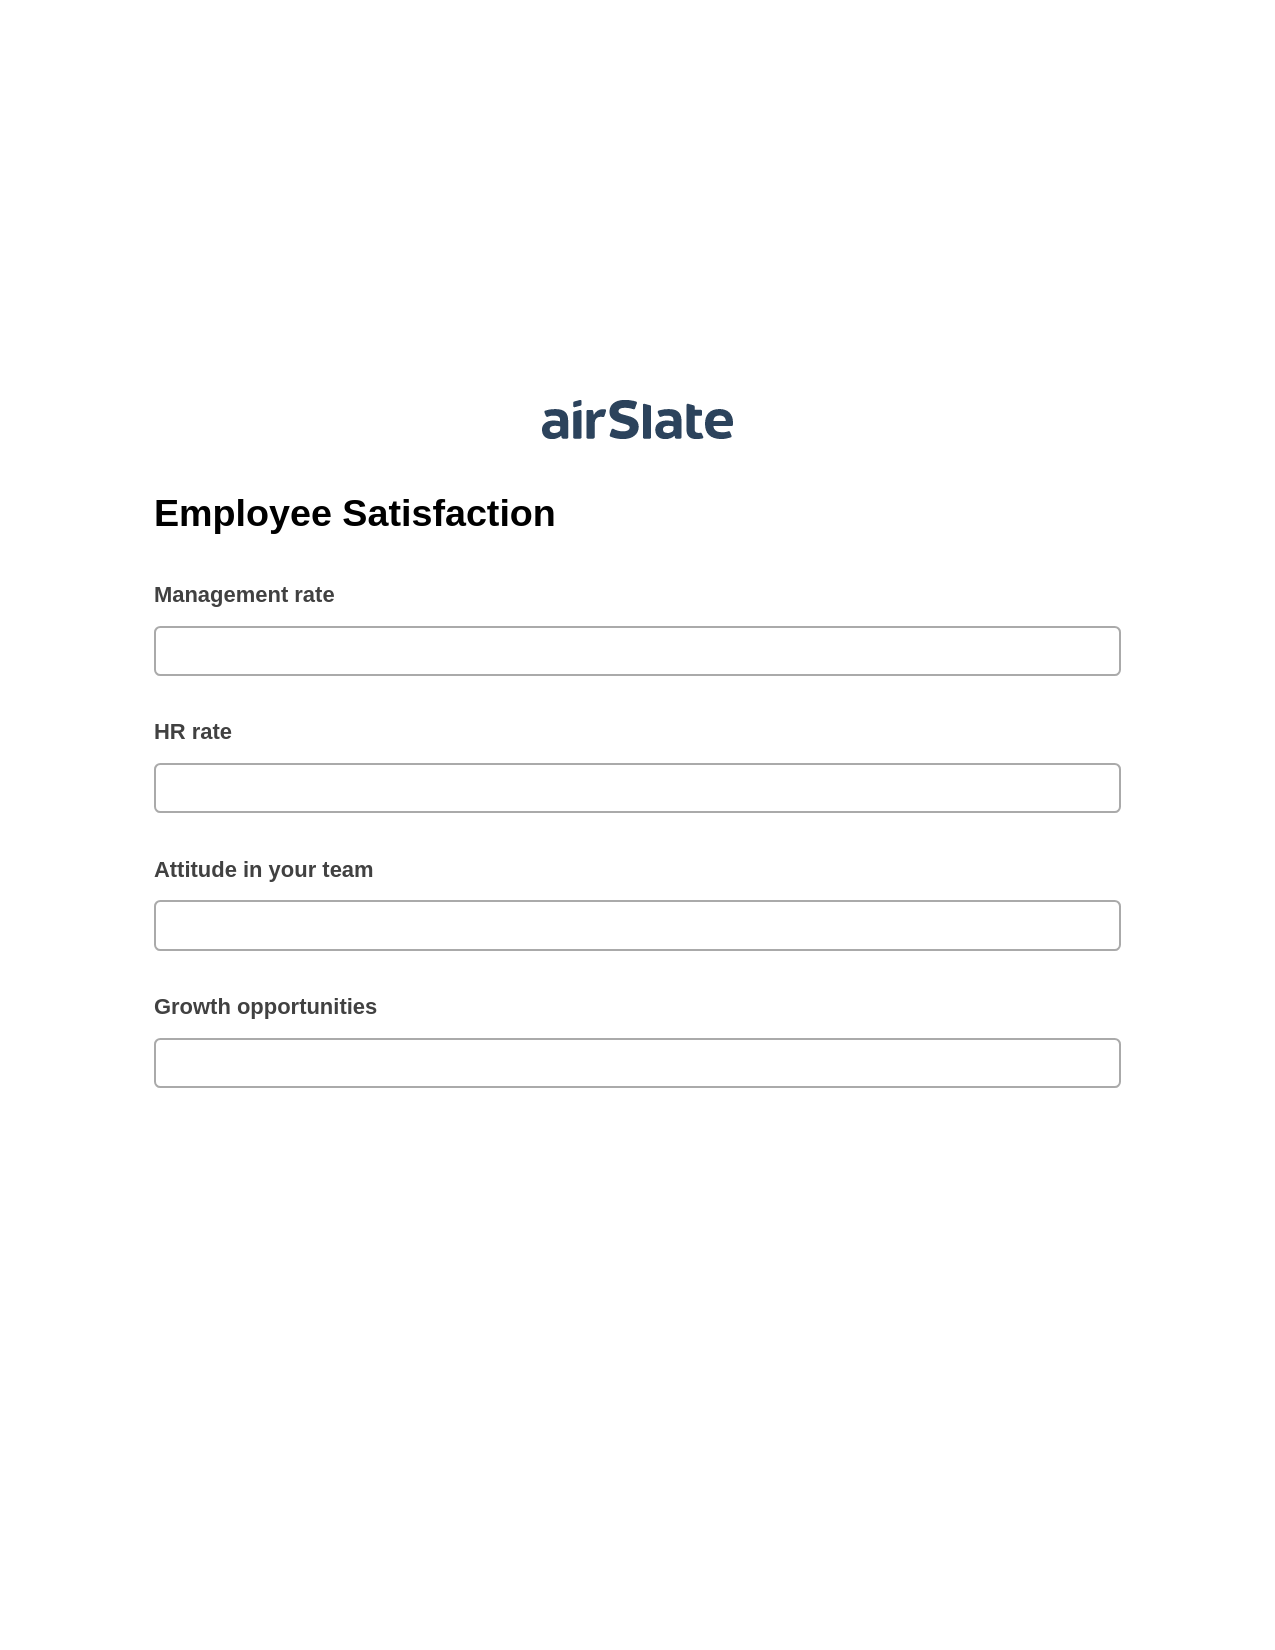 Employee Satisfaction Pre-fill Document Bot, Reminder Bot, Box Bot